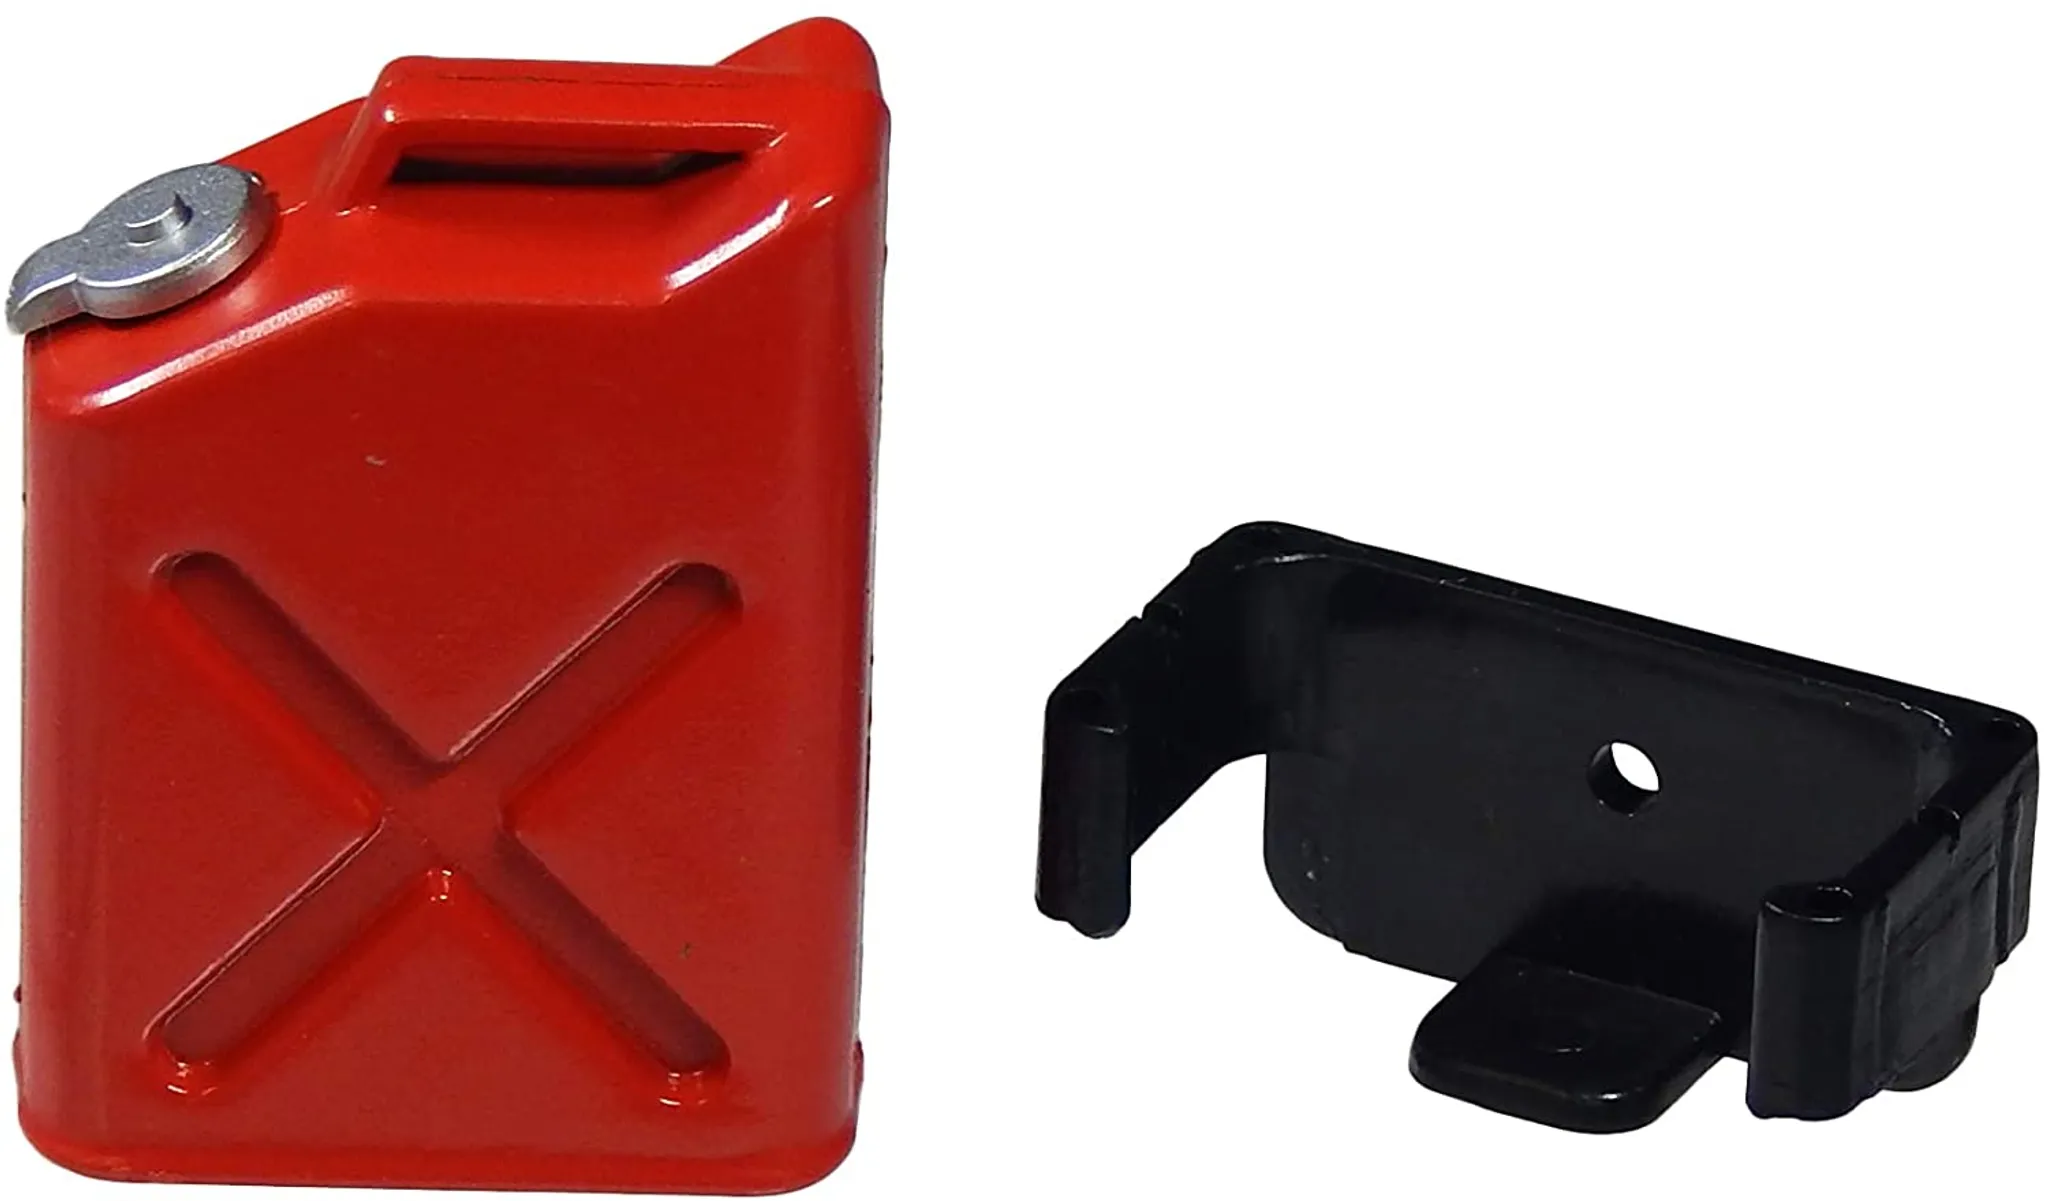 Kraftstoffkanister / Benzinkanister 3 Liter rot stapelbar